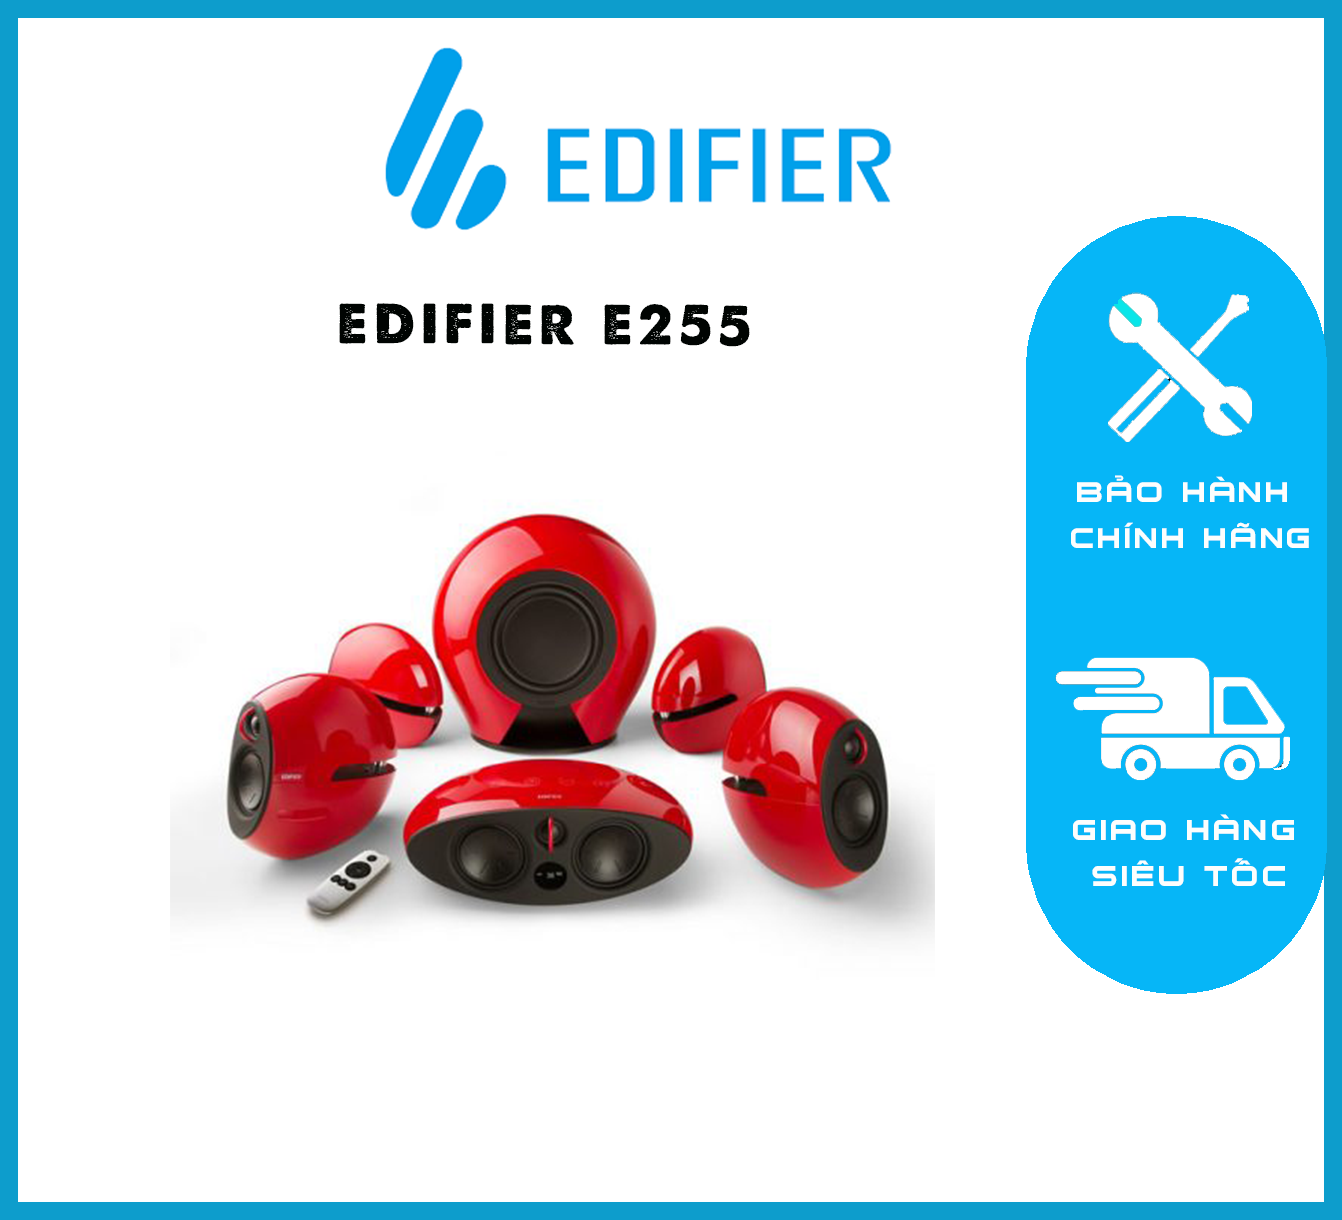 EDIFIER E255